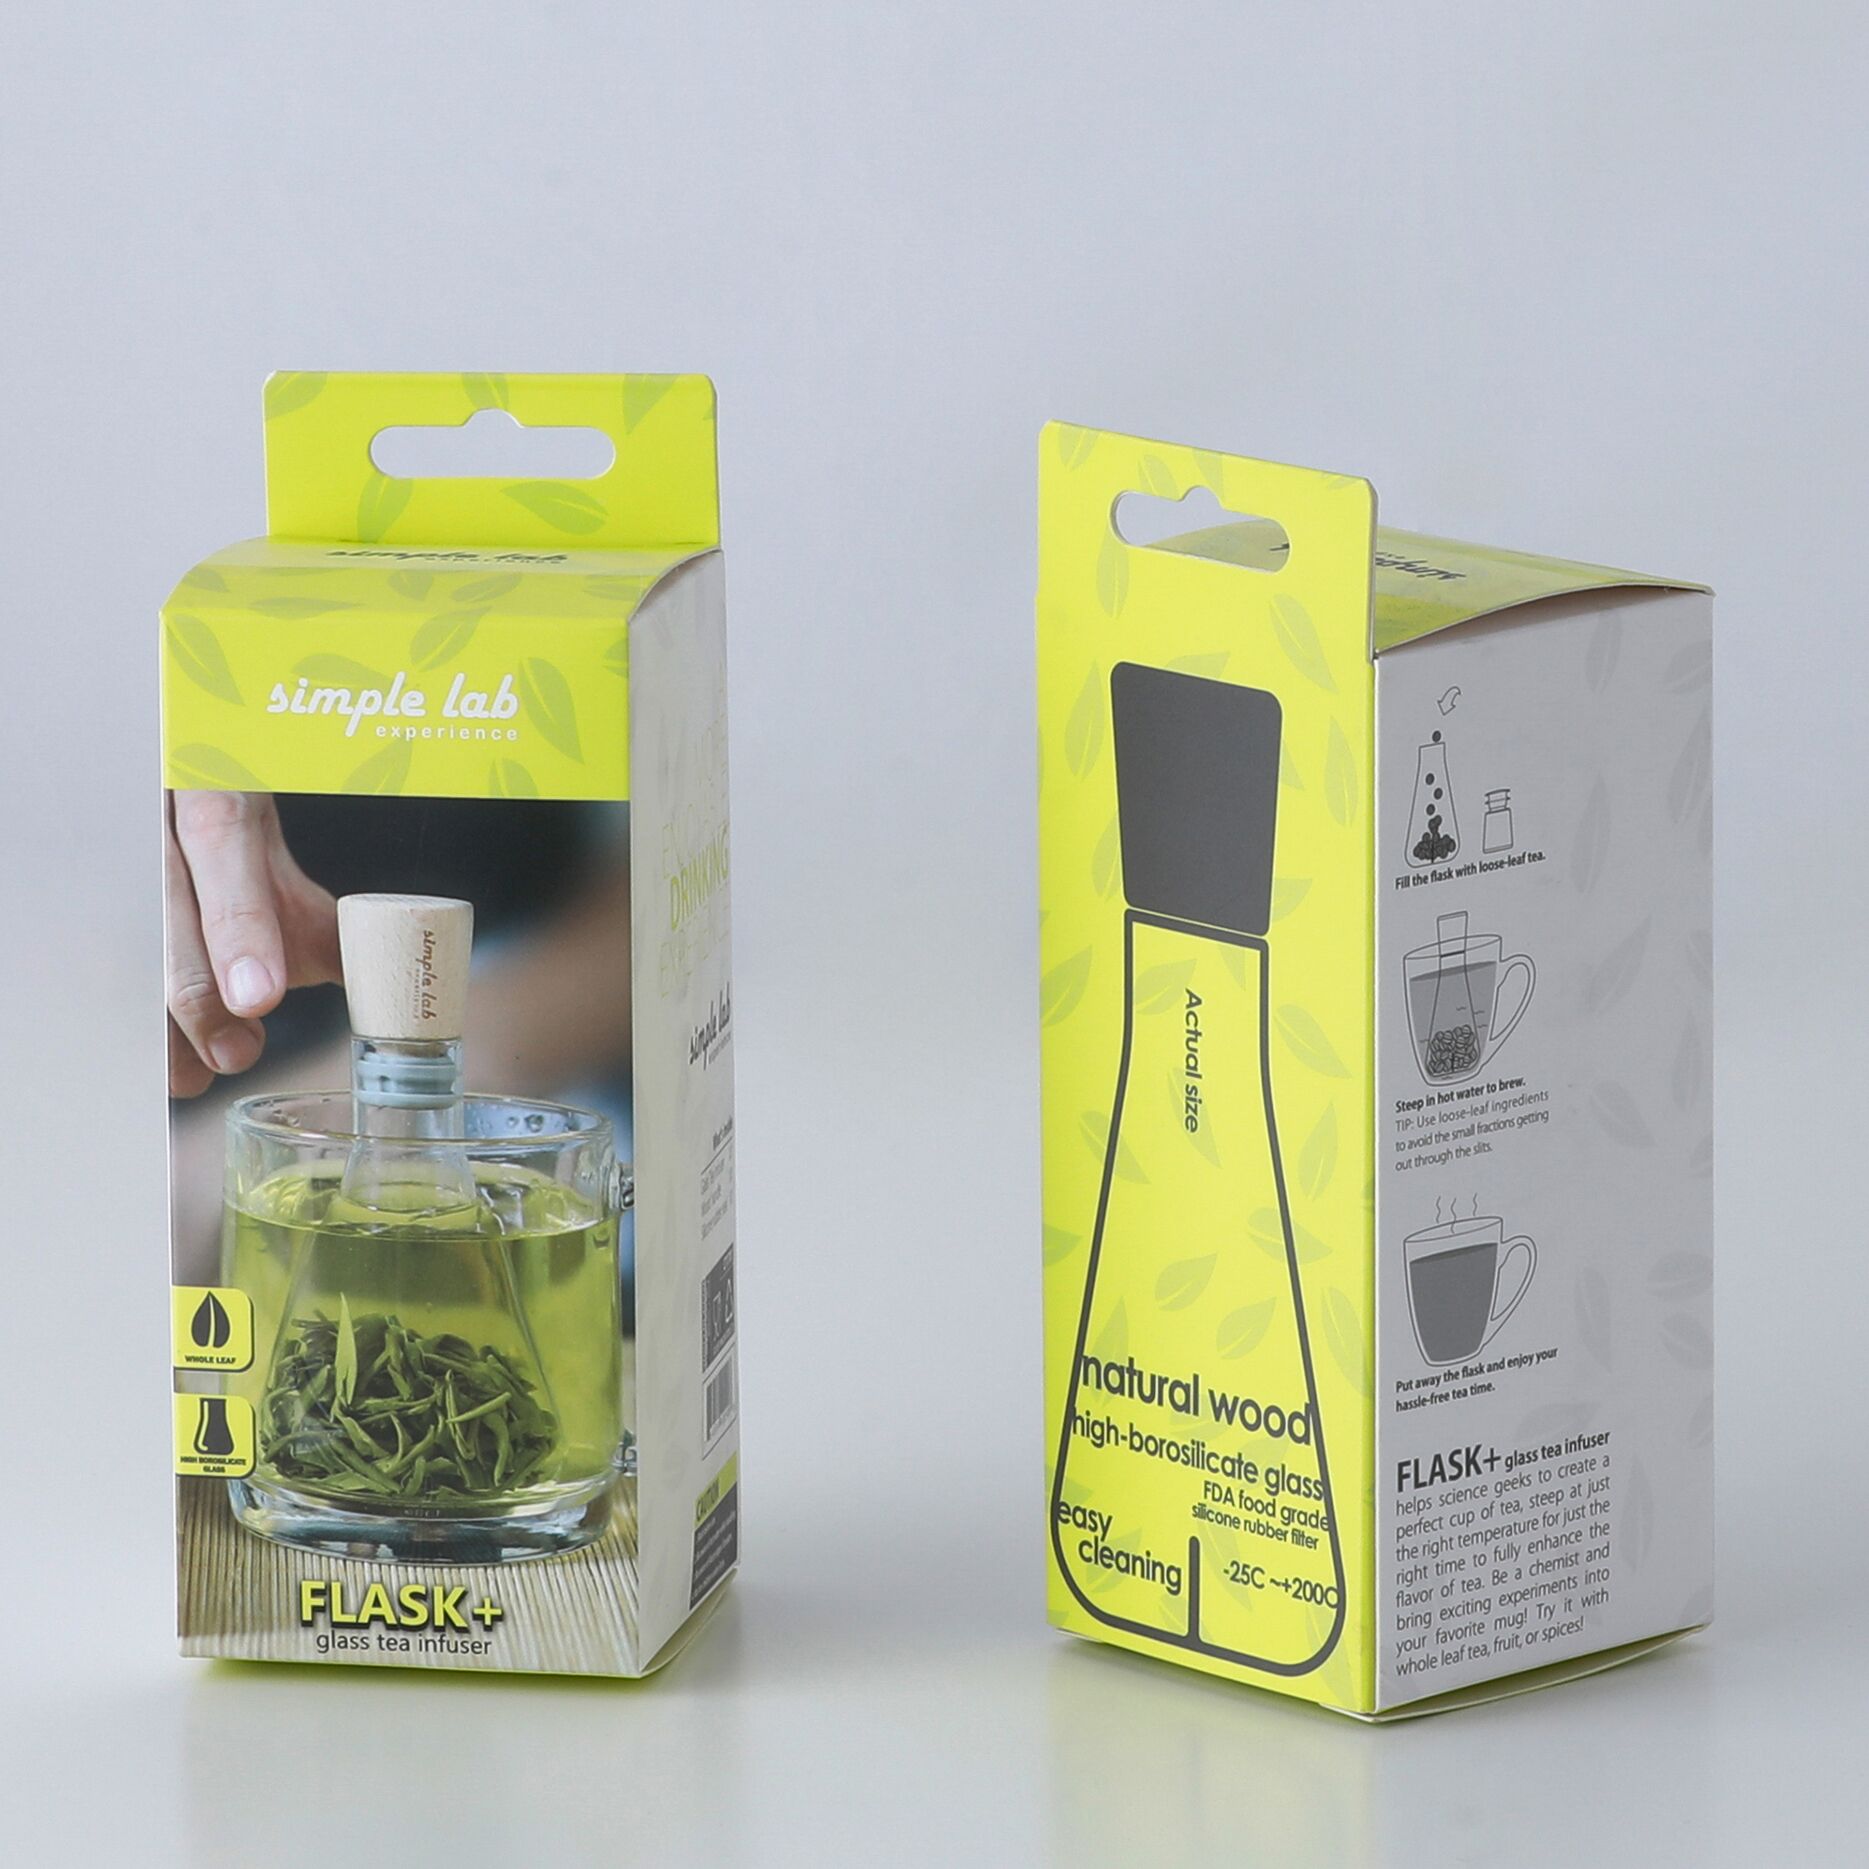 香港 SIMPLE LAB FLASK+ 燒瓶泡茶器